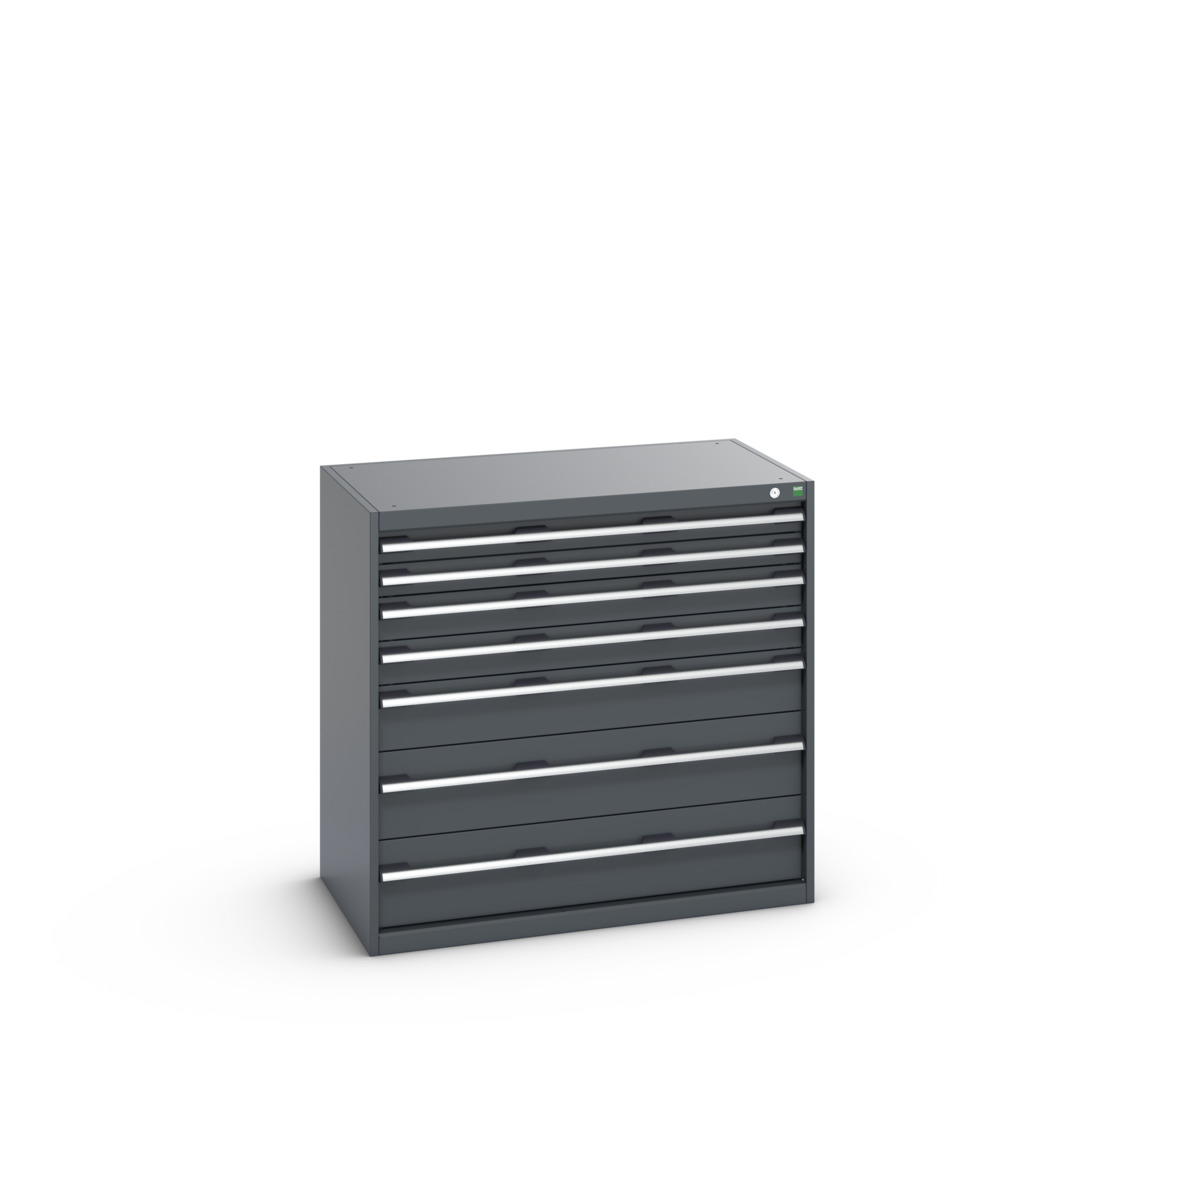 40021029.77V - cubio drawer cabinet